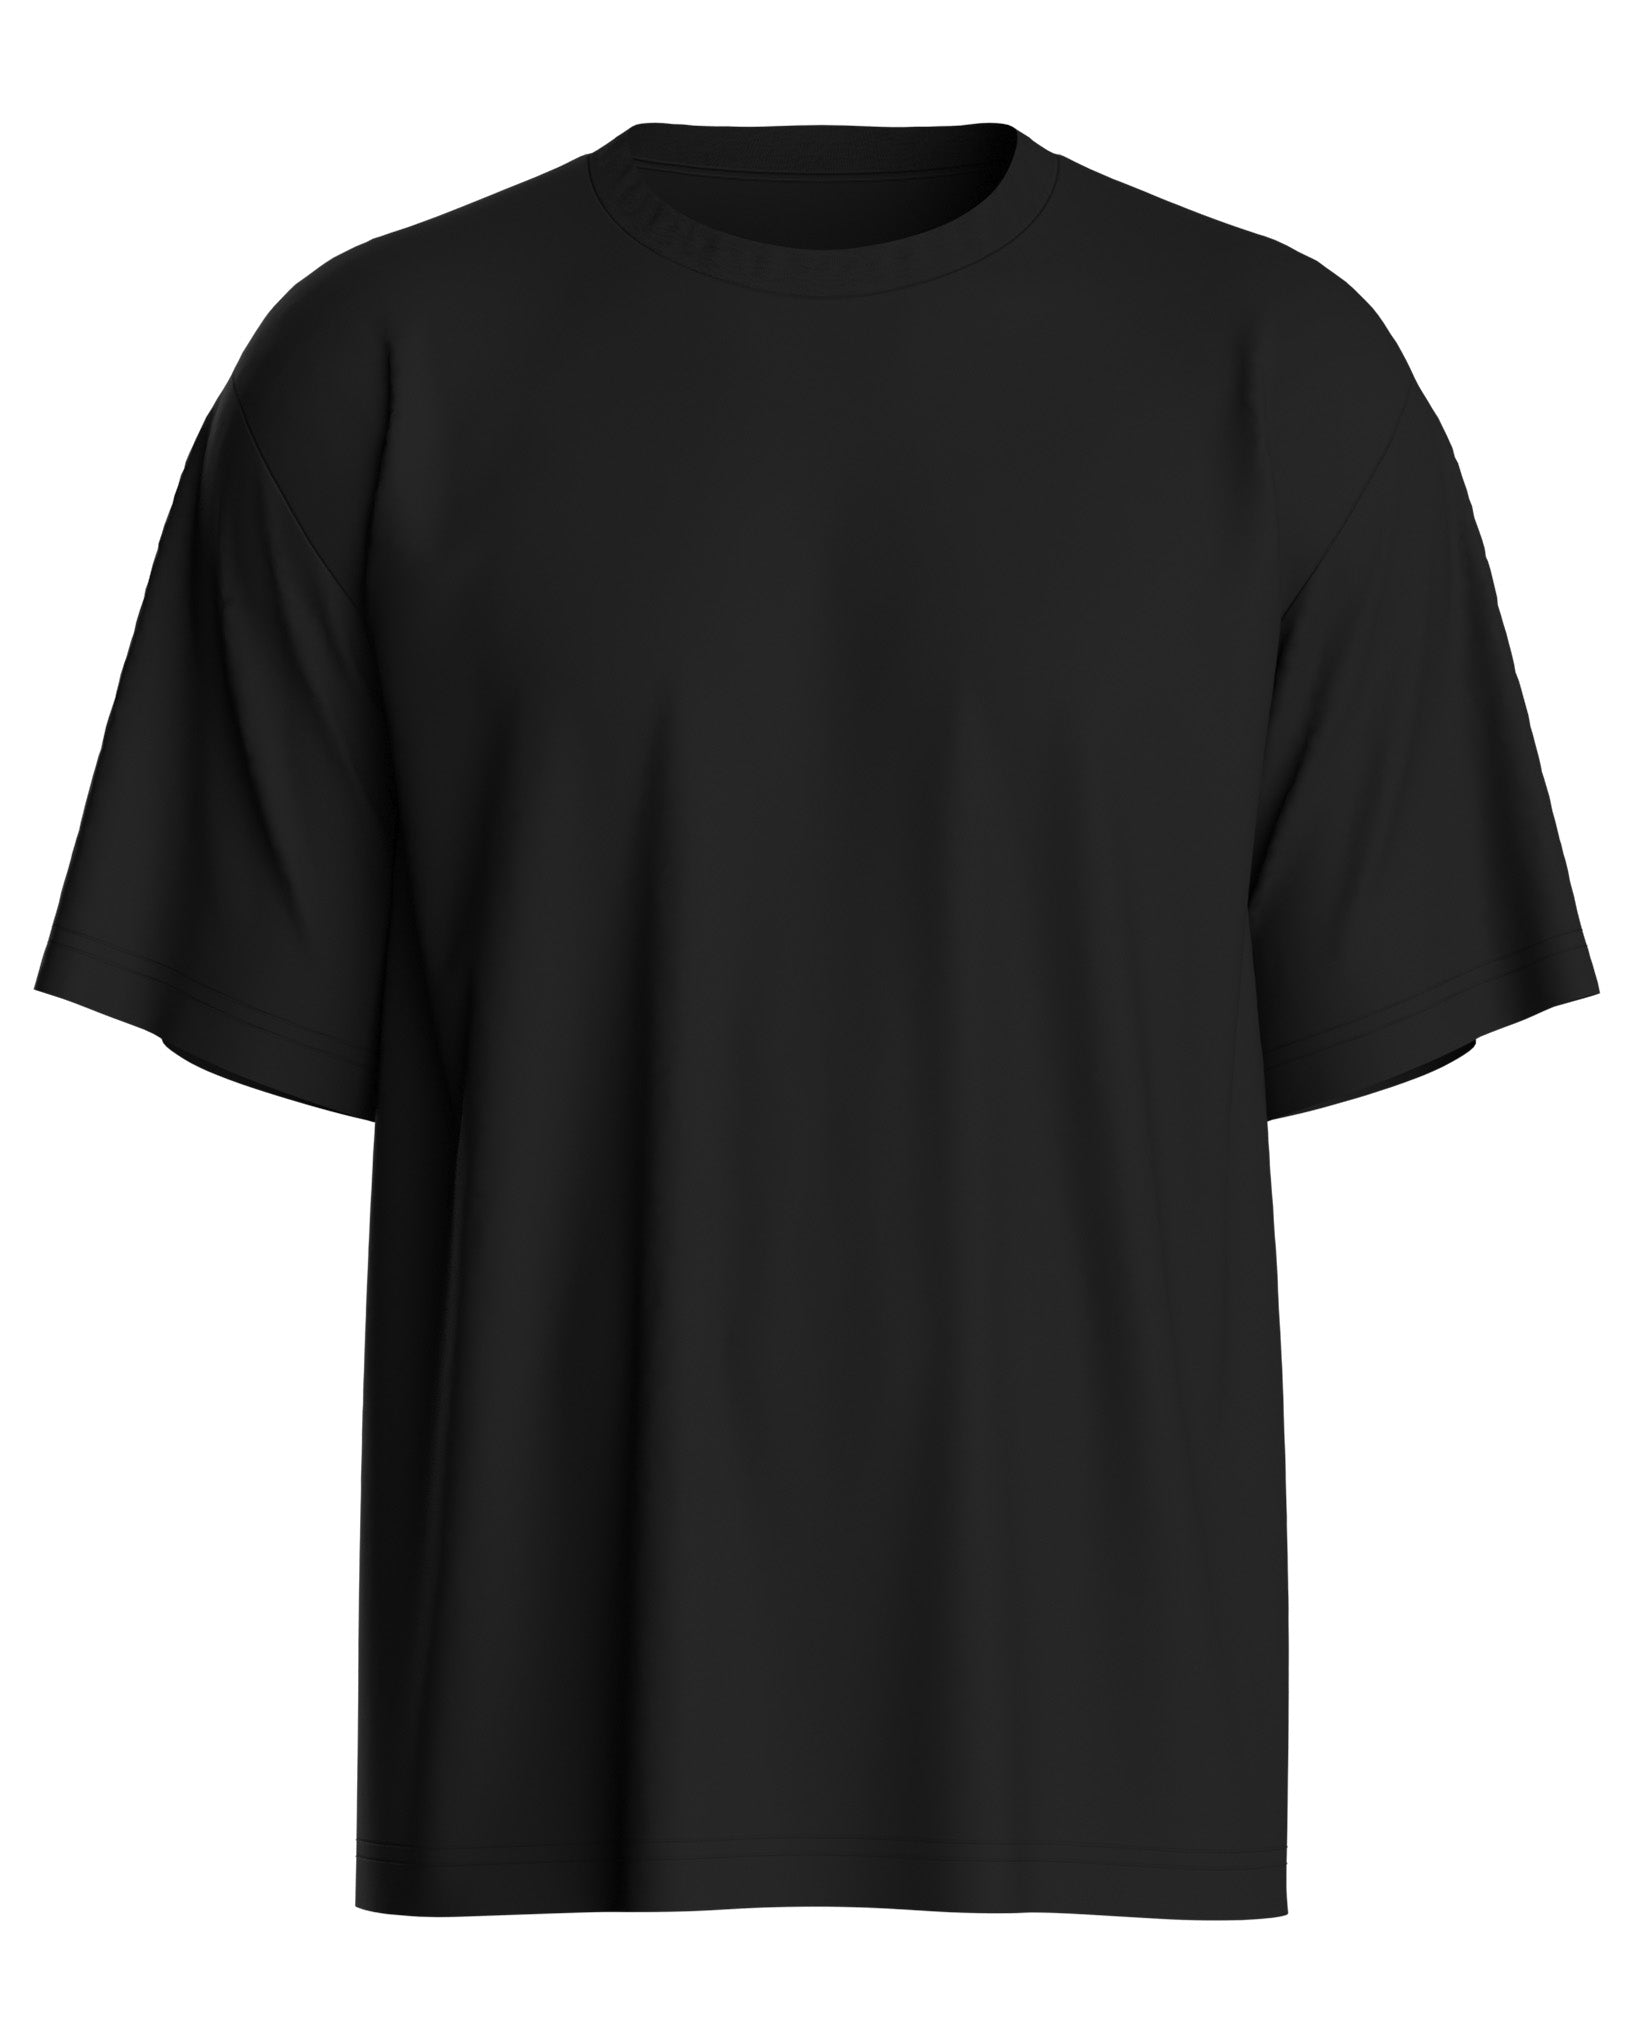 Black Ovesized Back Printed Unisex T - shirt